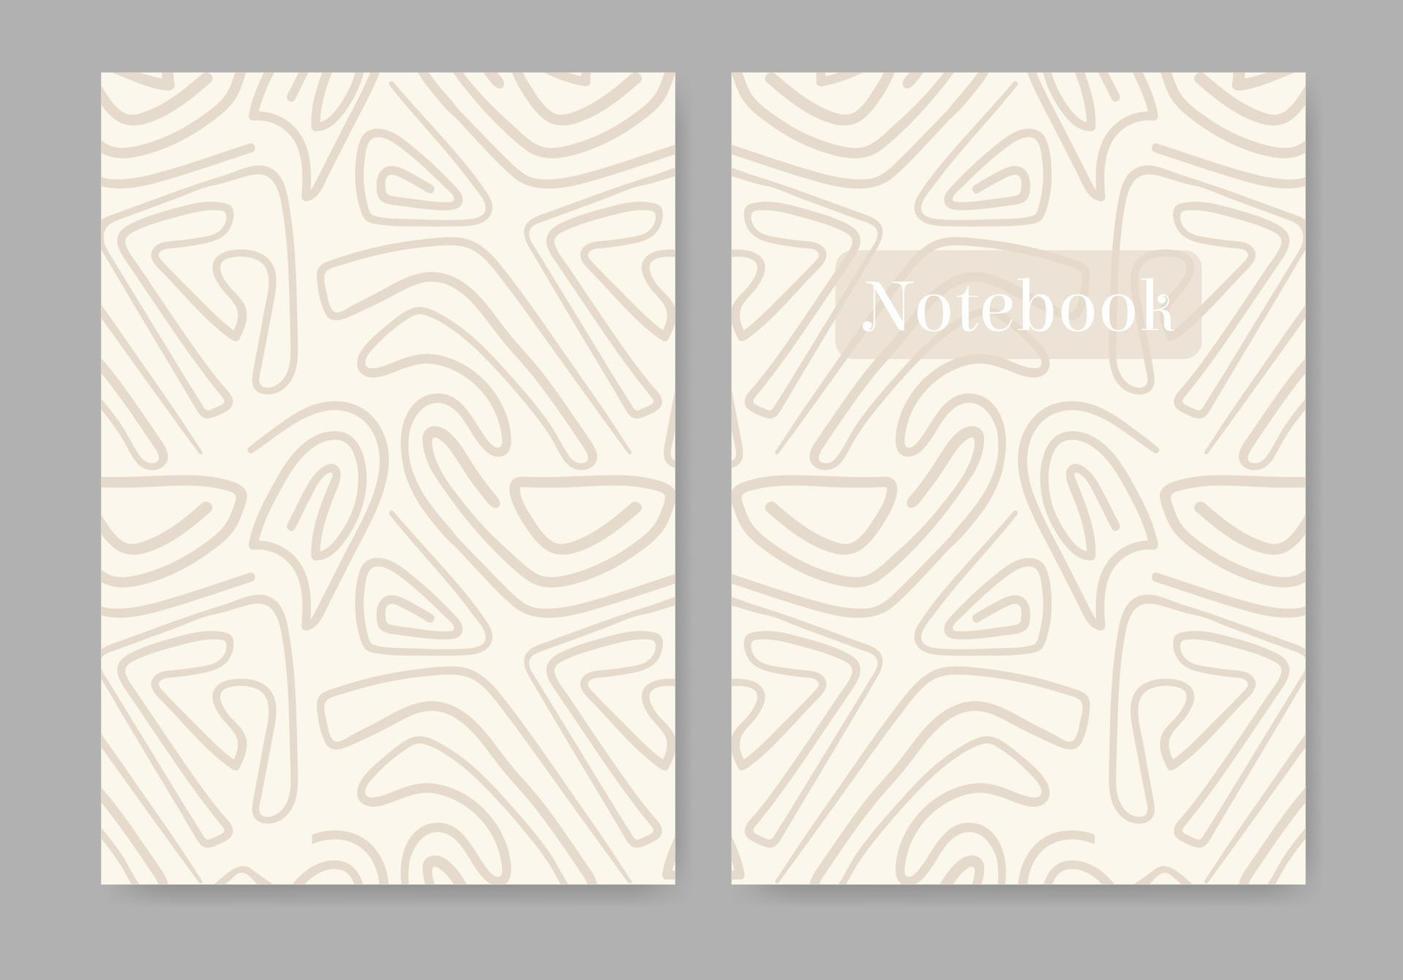 universelle abstrakte pastellfarbene vorlage für notebook-cover. nahtlose Muster, einfach zu skalieren. Vektor-Illustration vektor